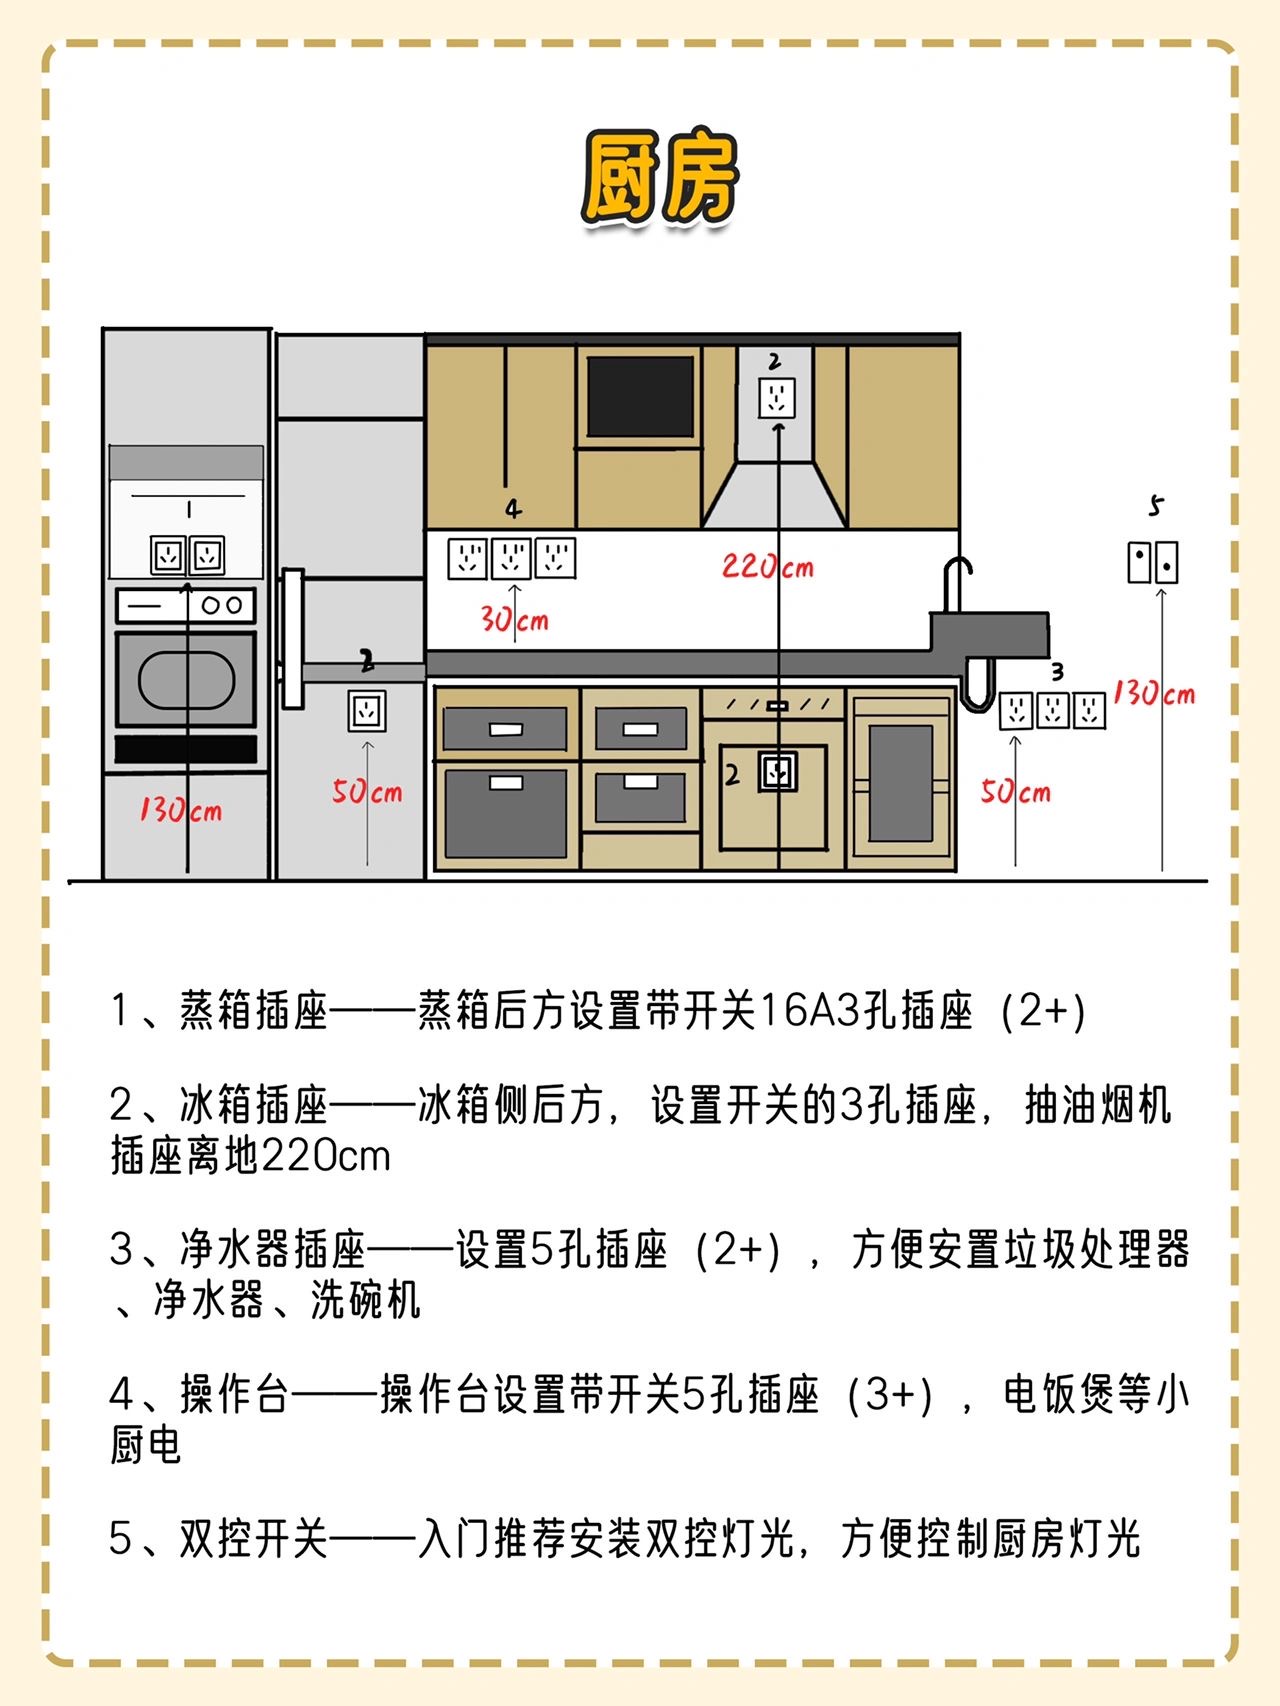 家装水电标准尺寸图(水电布局方案)